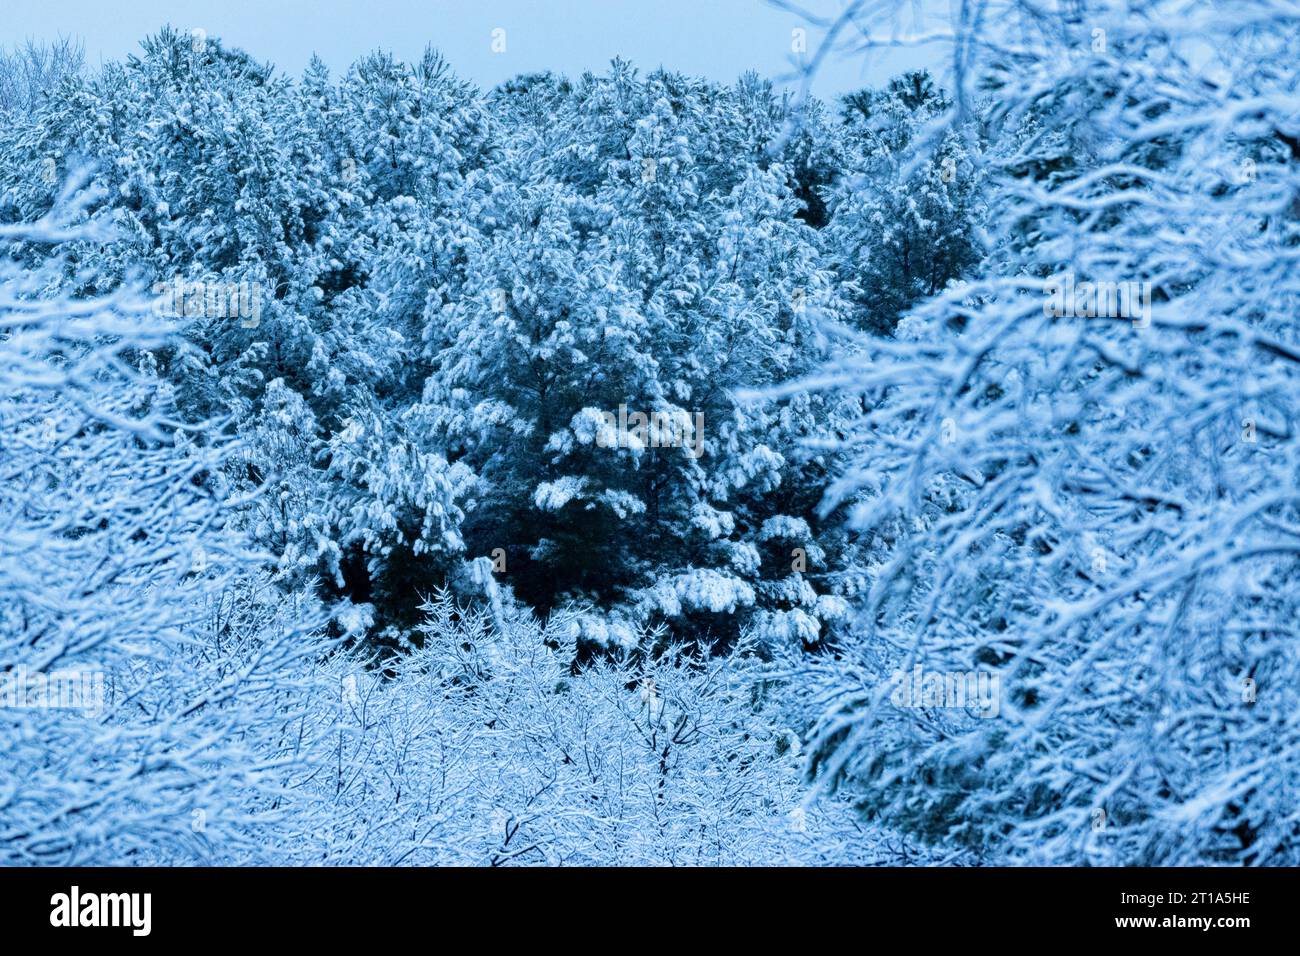 snow over trees Stock Photo